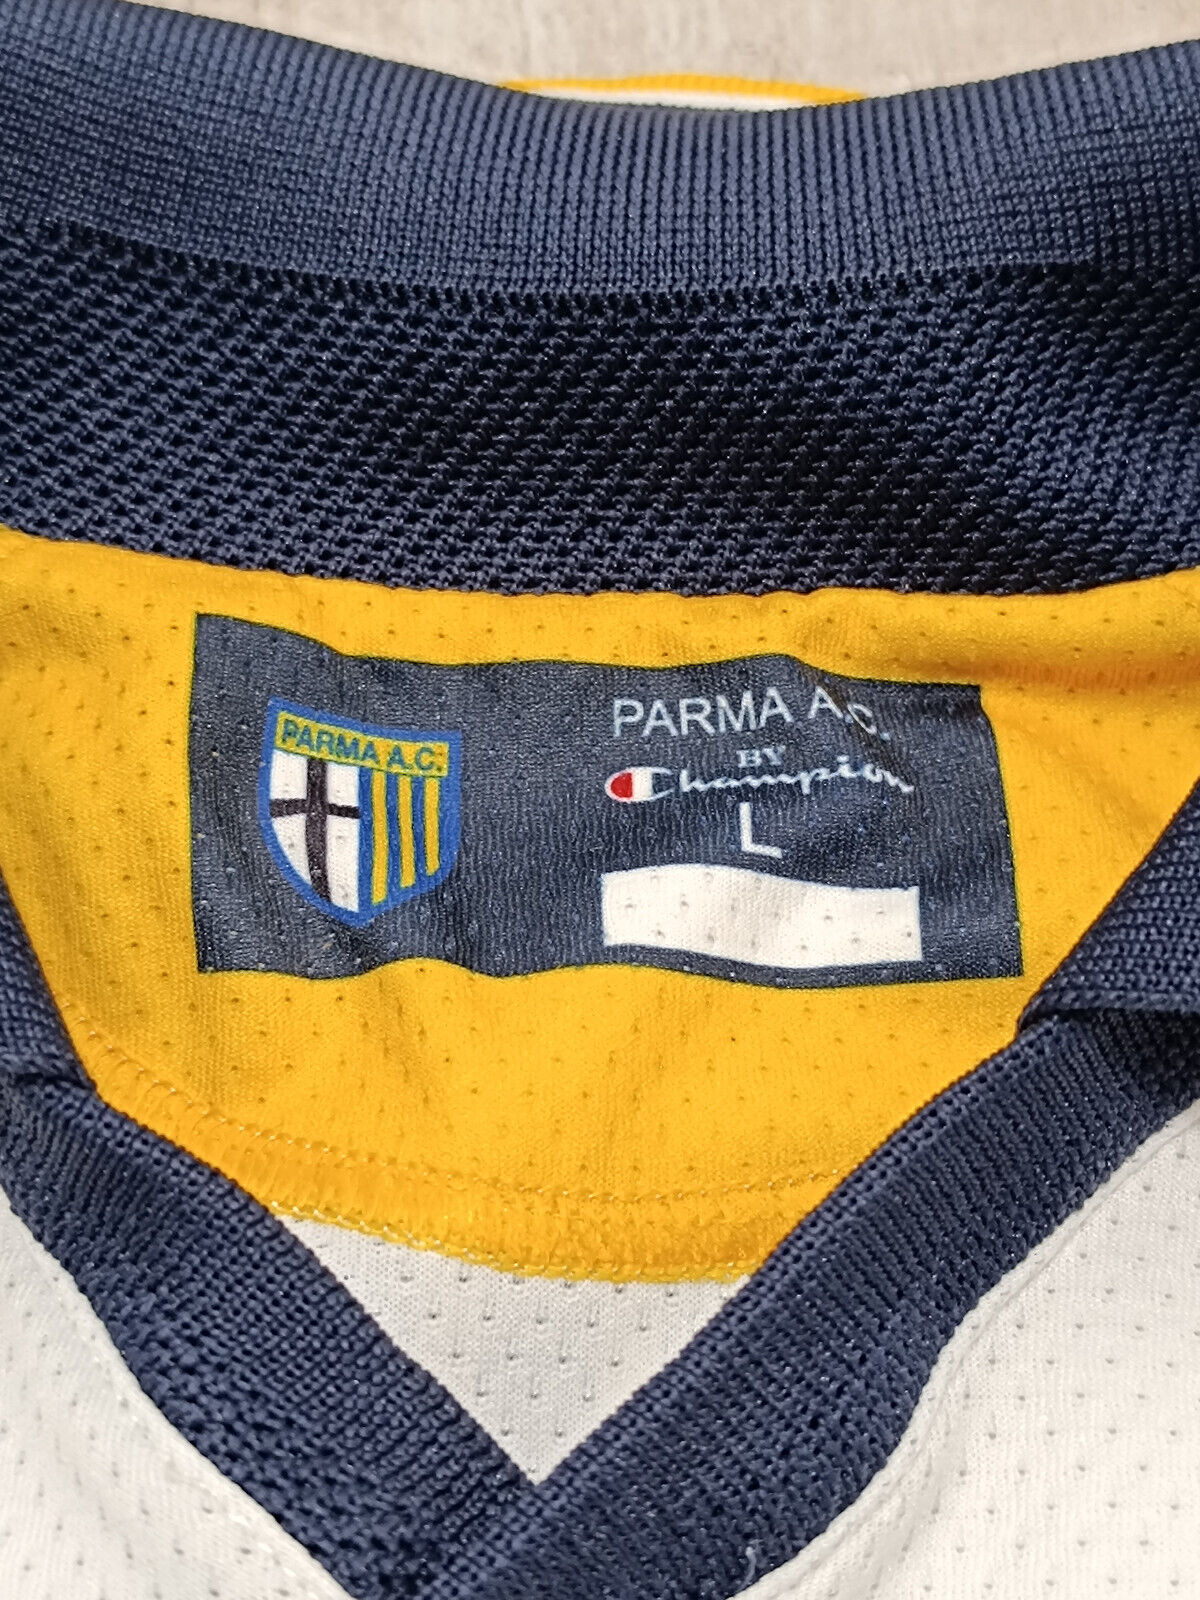 maglia calcio vintage AC Parma Adriano Champion Parmalat GARA WORN 2003 2004